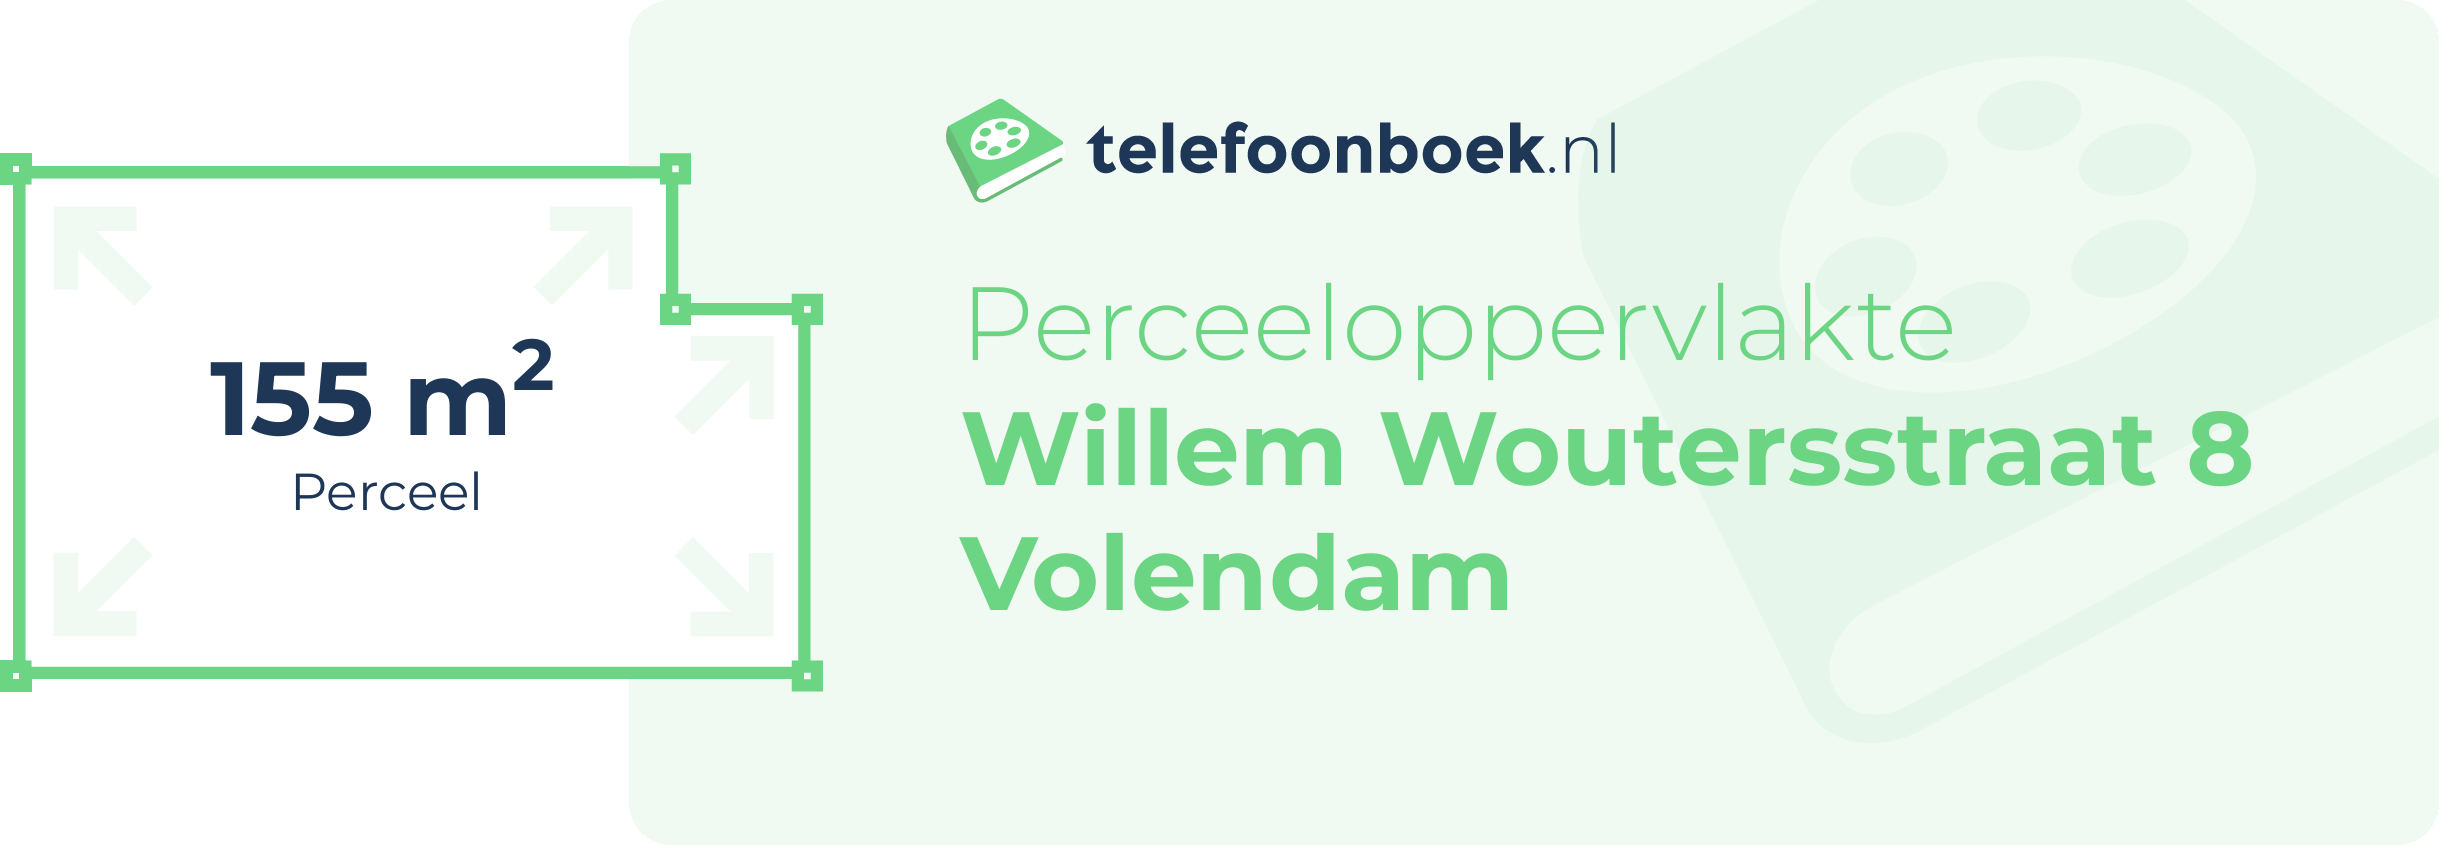 Perceeloppervlakte Willem Woutersstraat 8 Volendam